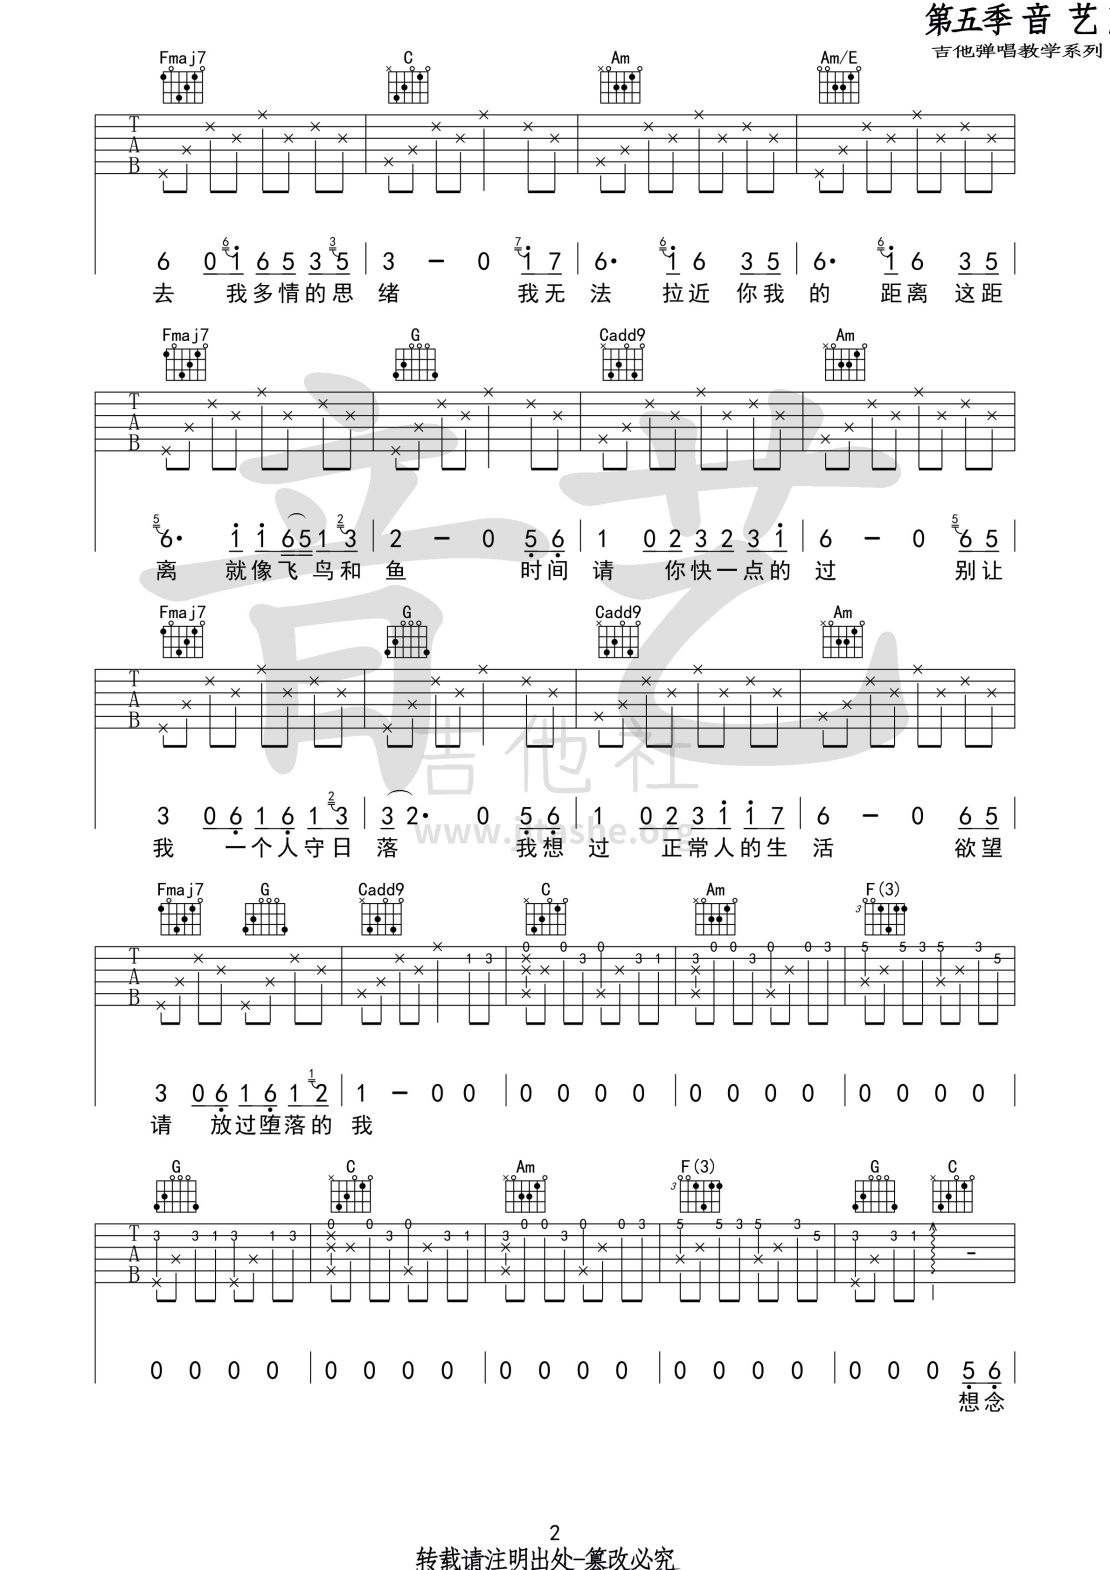 打印:八十年代的歌吉他谱_赵雷(雷子)_八十年代的歌2 第五期 第二十集.jpg